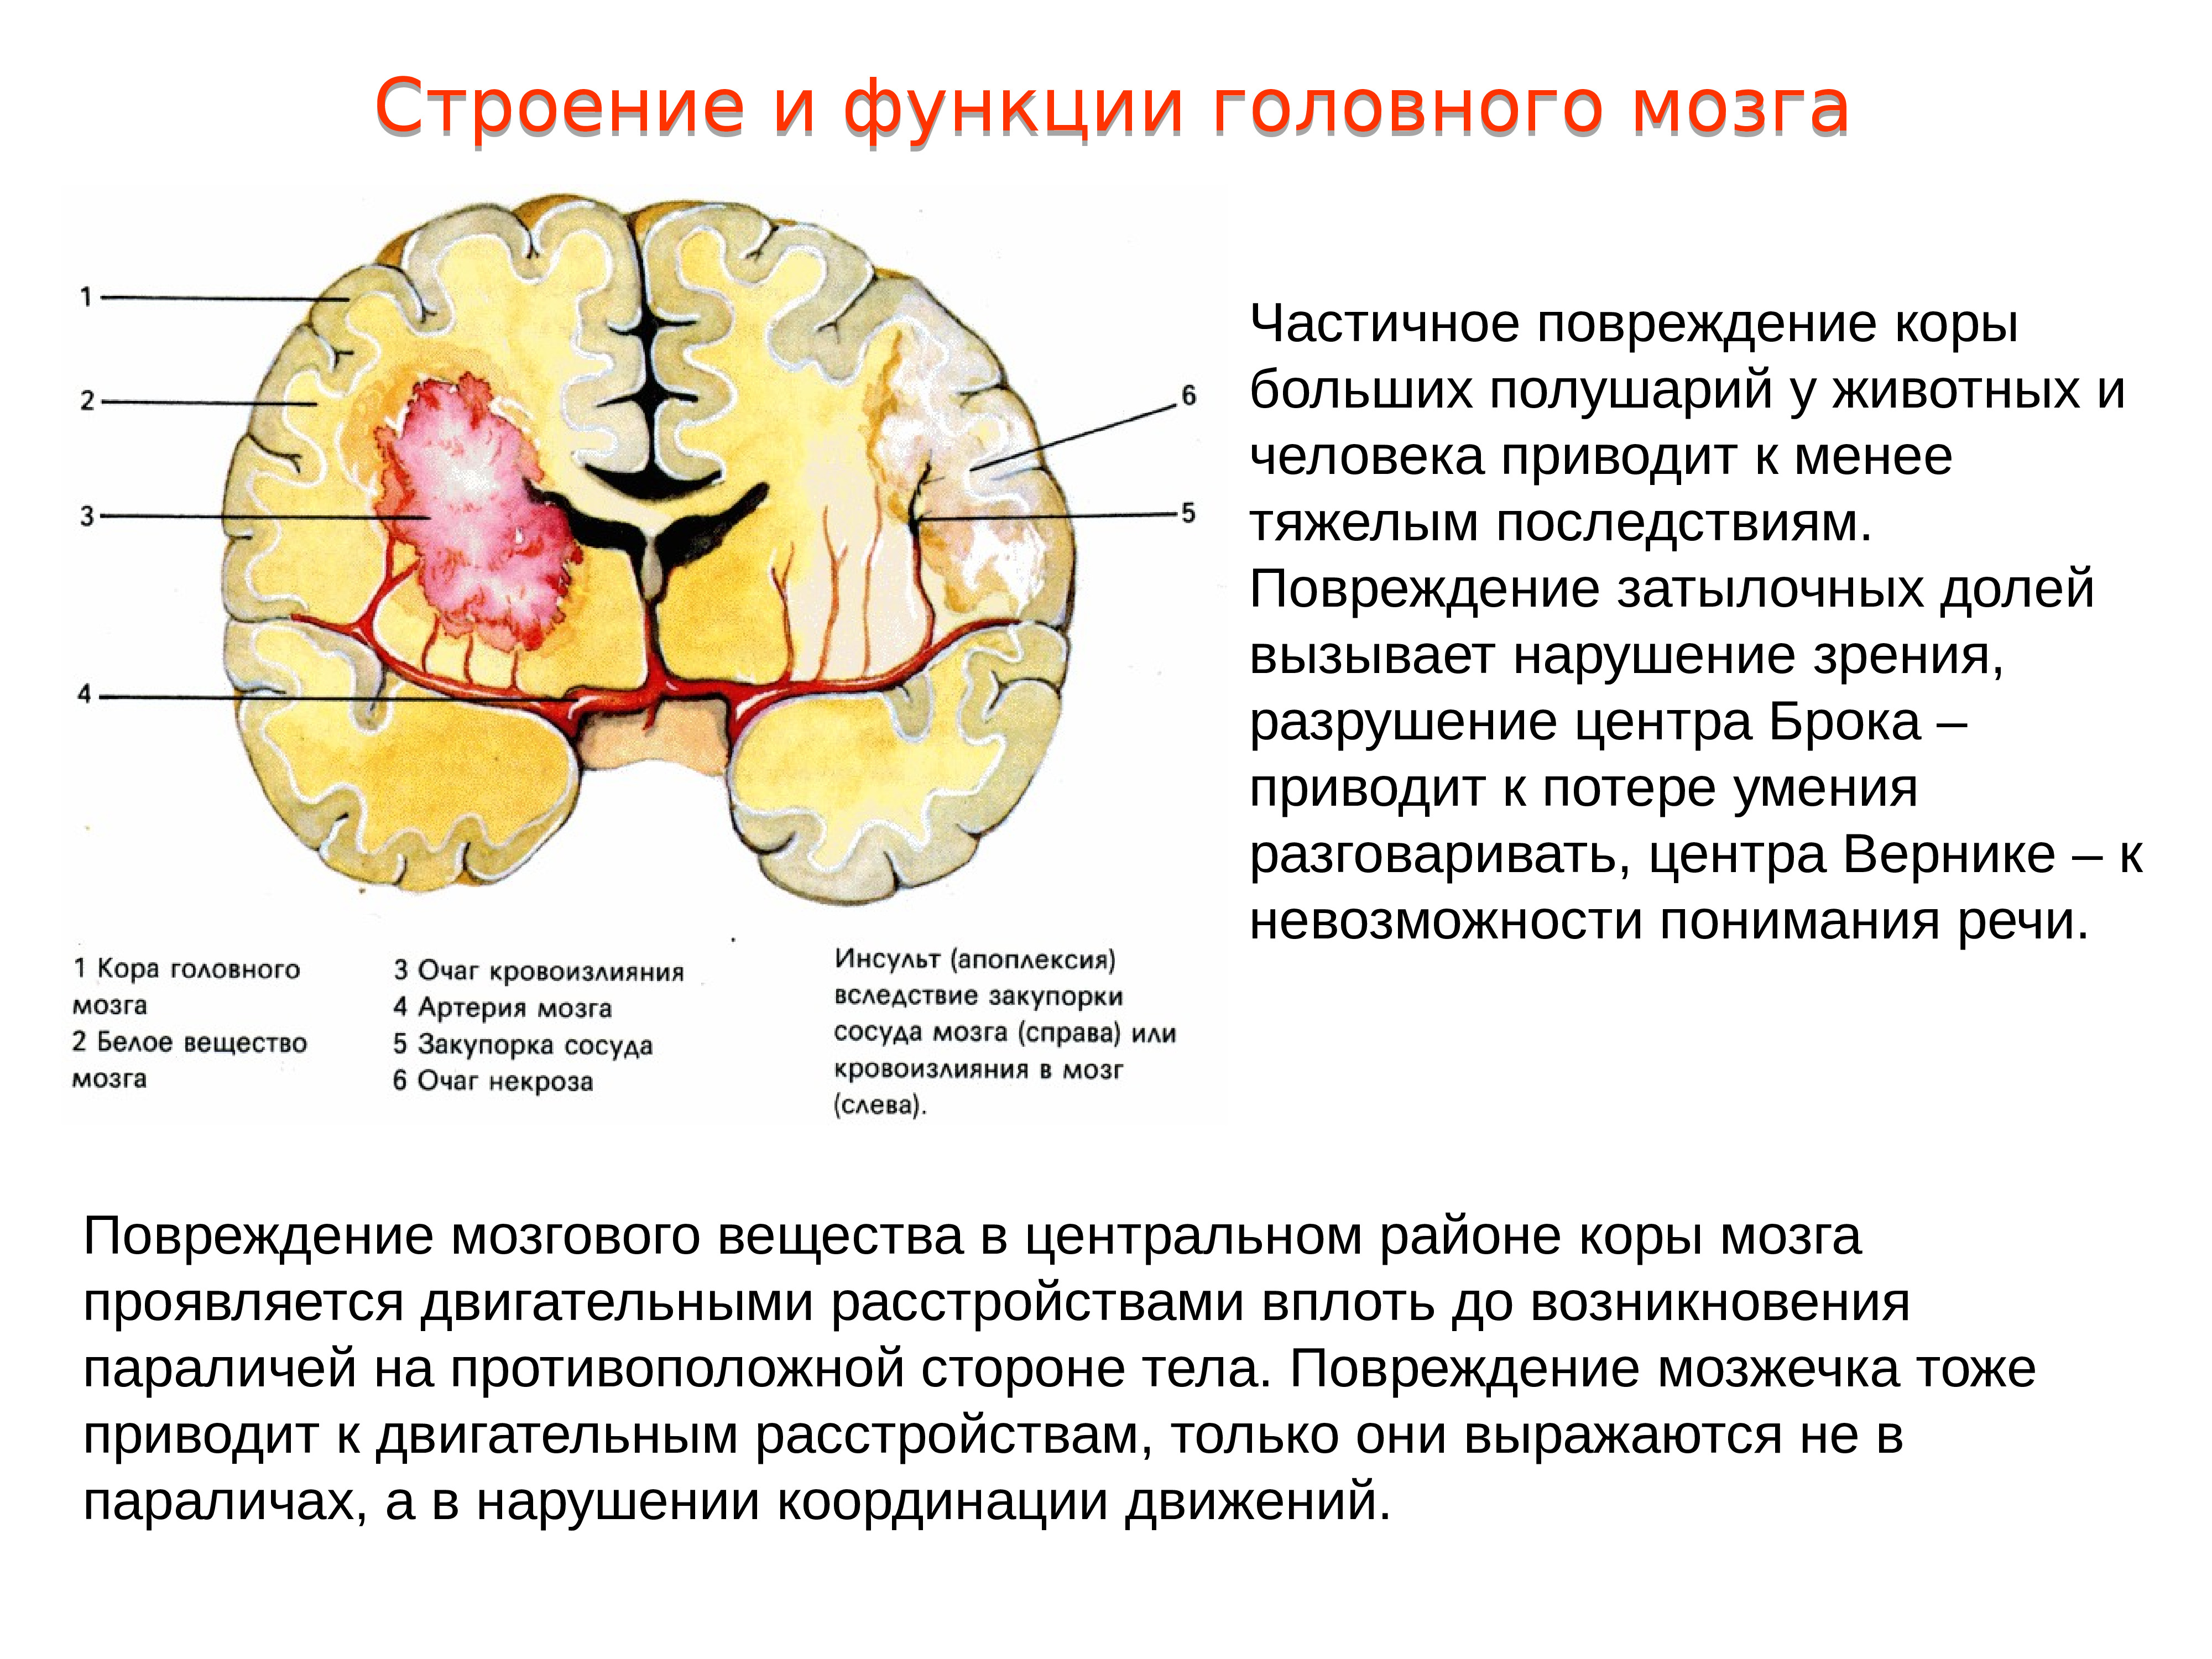 Расстройство полушарий. Локальное повреждение коры головного мозга. Повреждения затылочной доли мозга. Повреждение коры больших полушарий головного мозга.